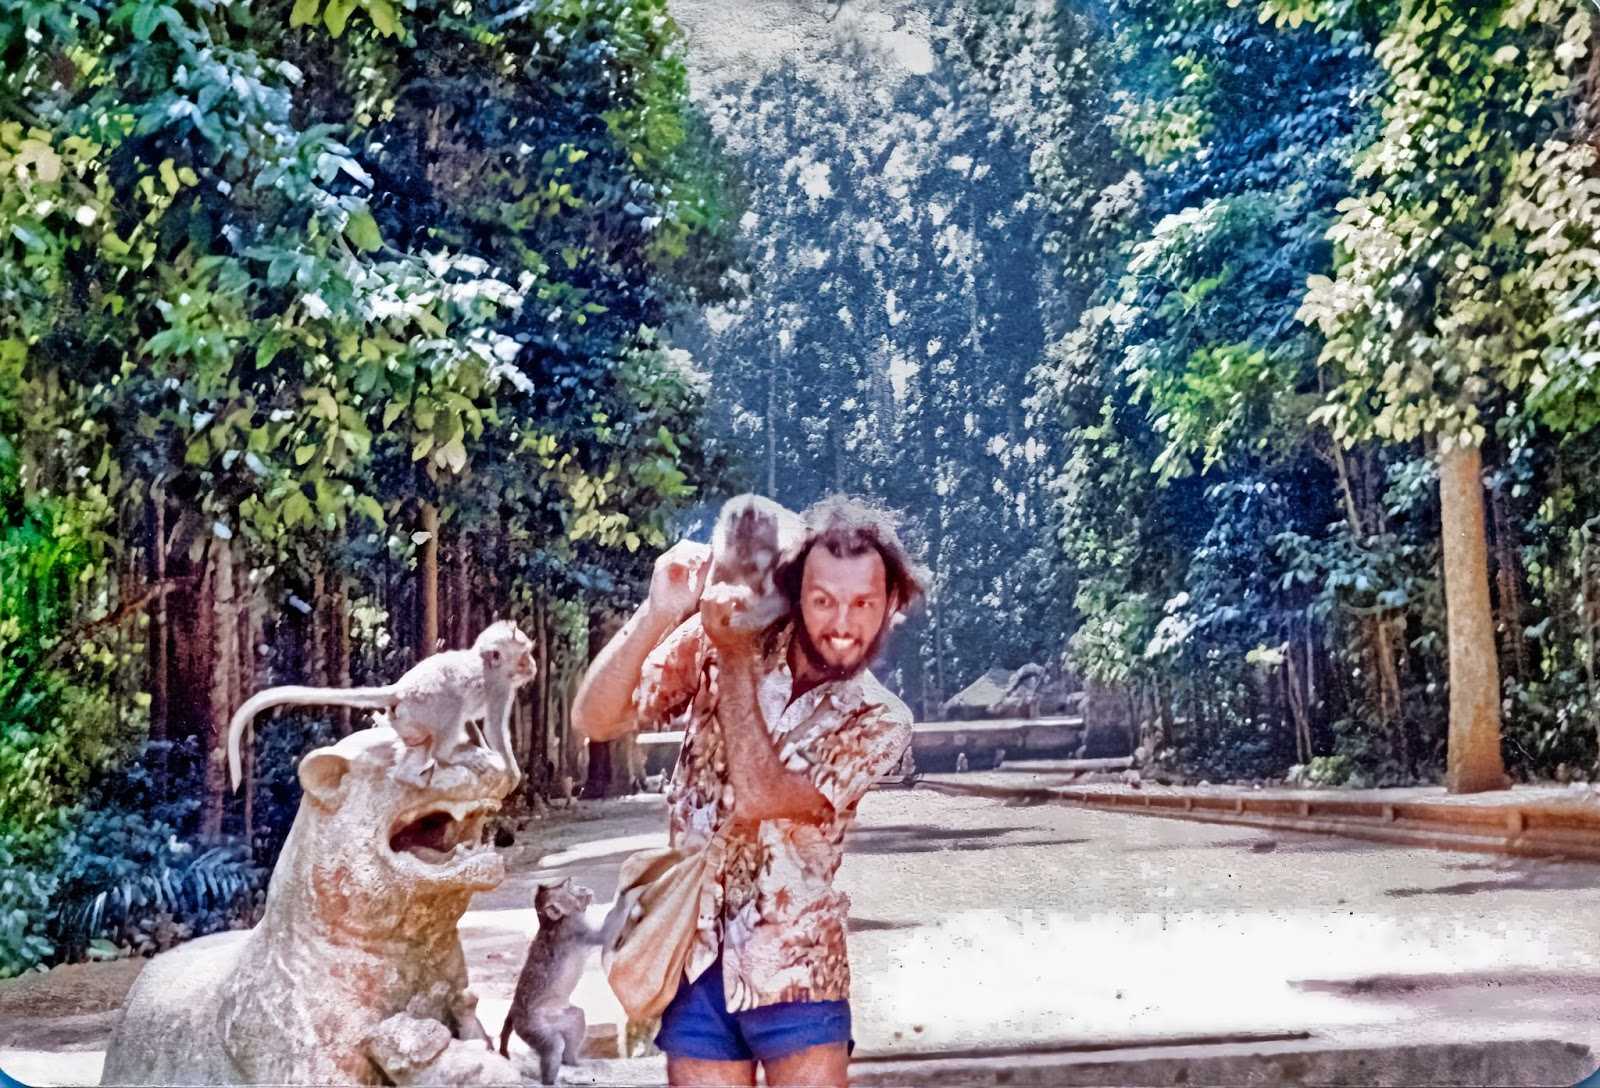 Arnie Papp in Bali, Indonesia